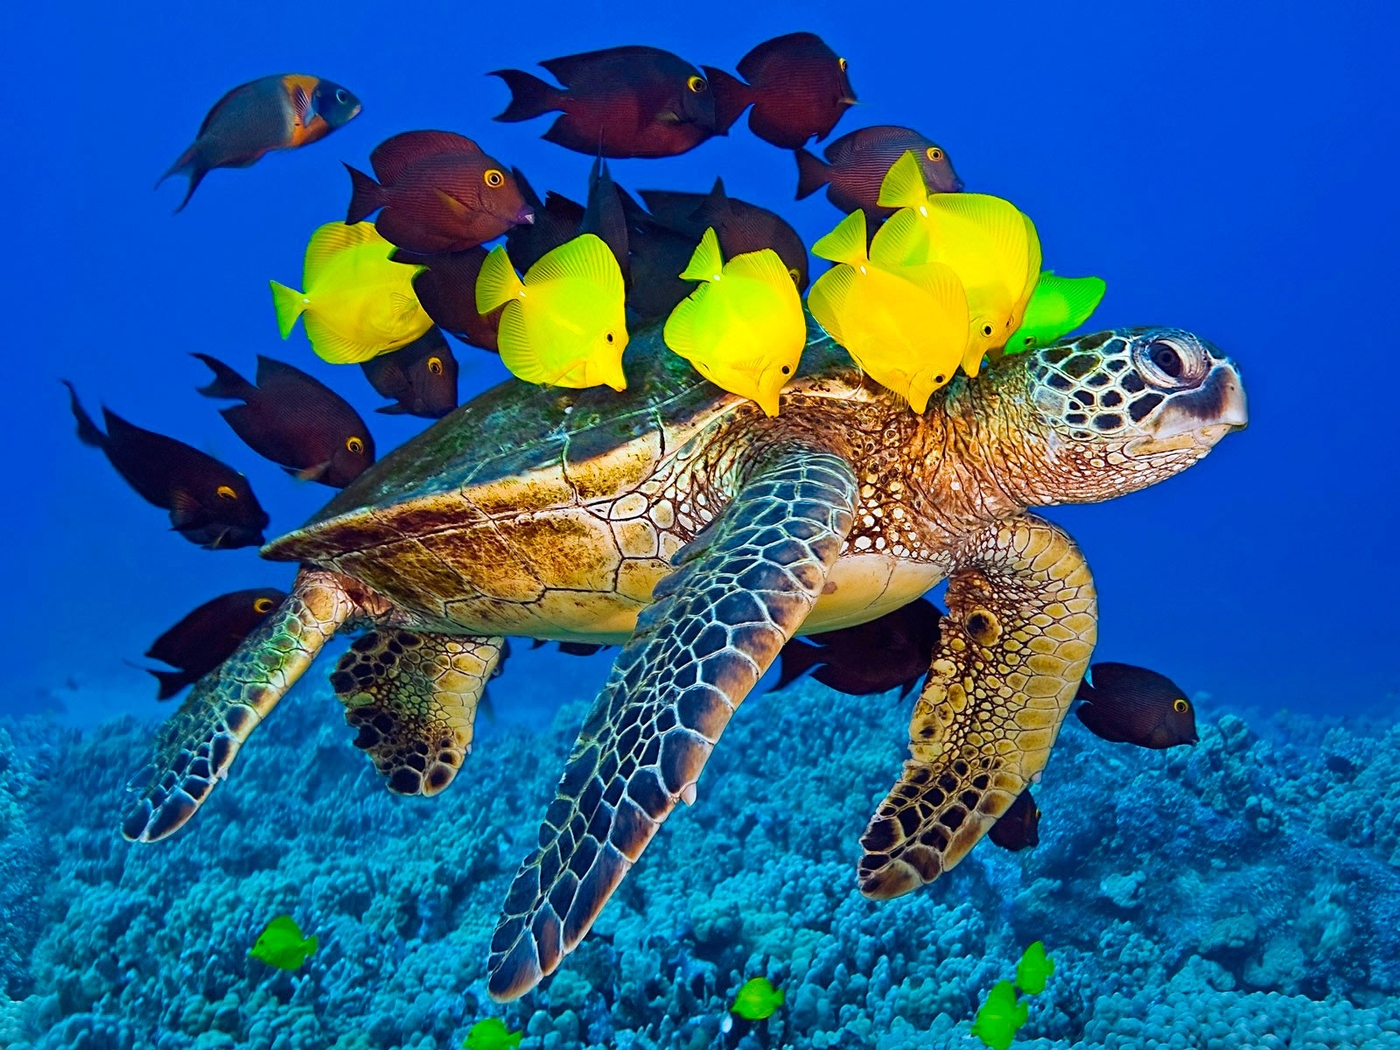 Image: The green sea turtle, fish, a surgeon, zebrasoma, corals